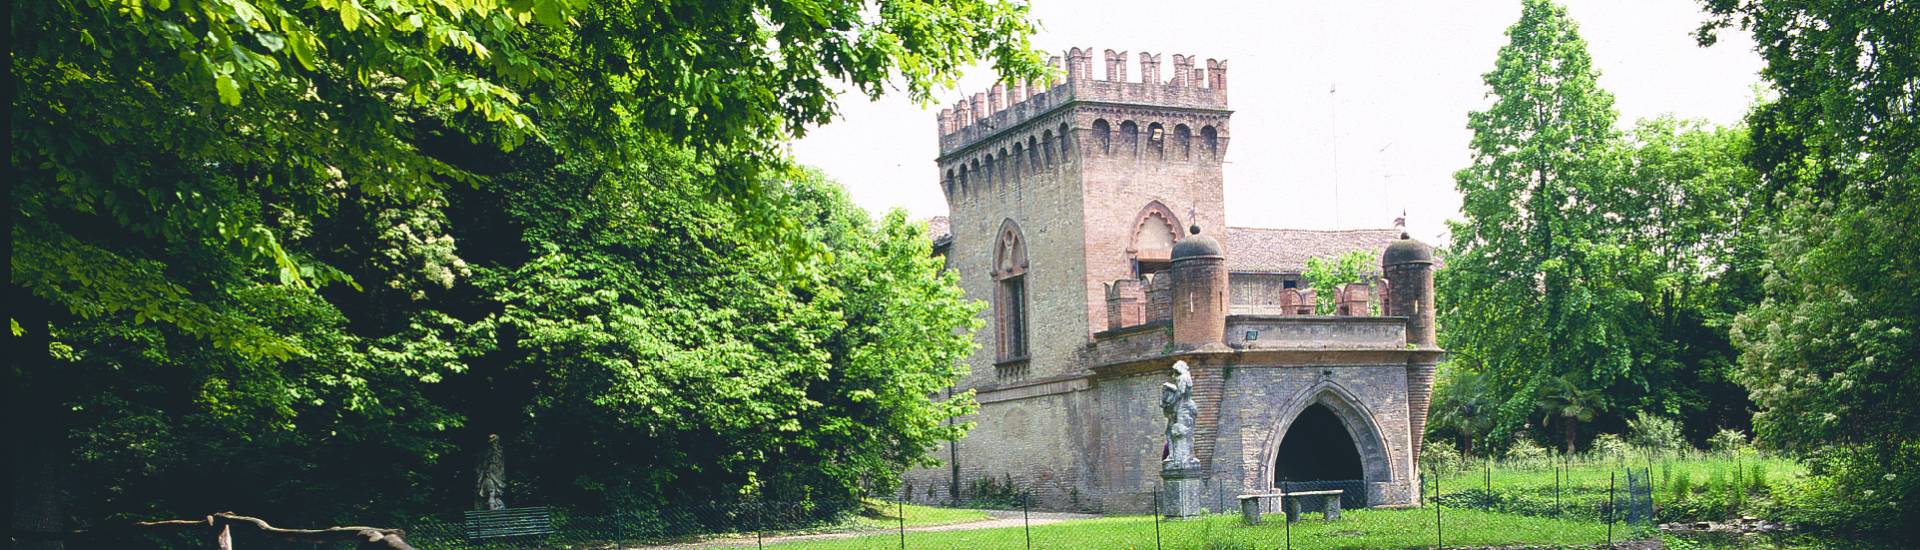 Rocca Meli Lupi di Soragna - Little fortress and lake photo credits: |Todaro| - Archivio Rocca